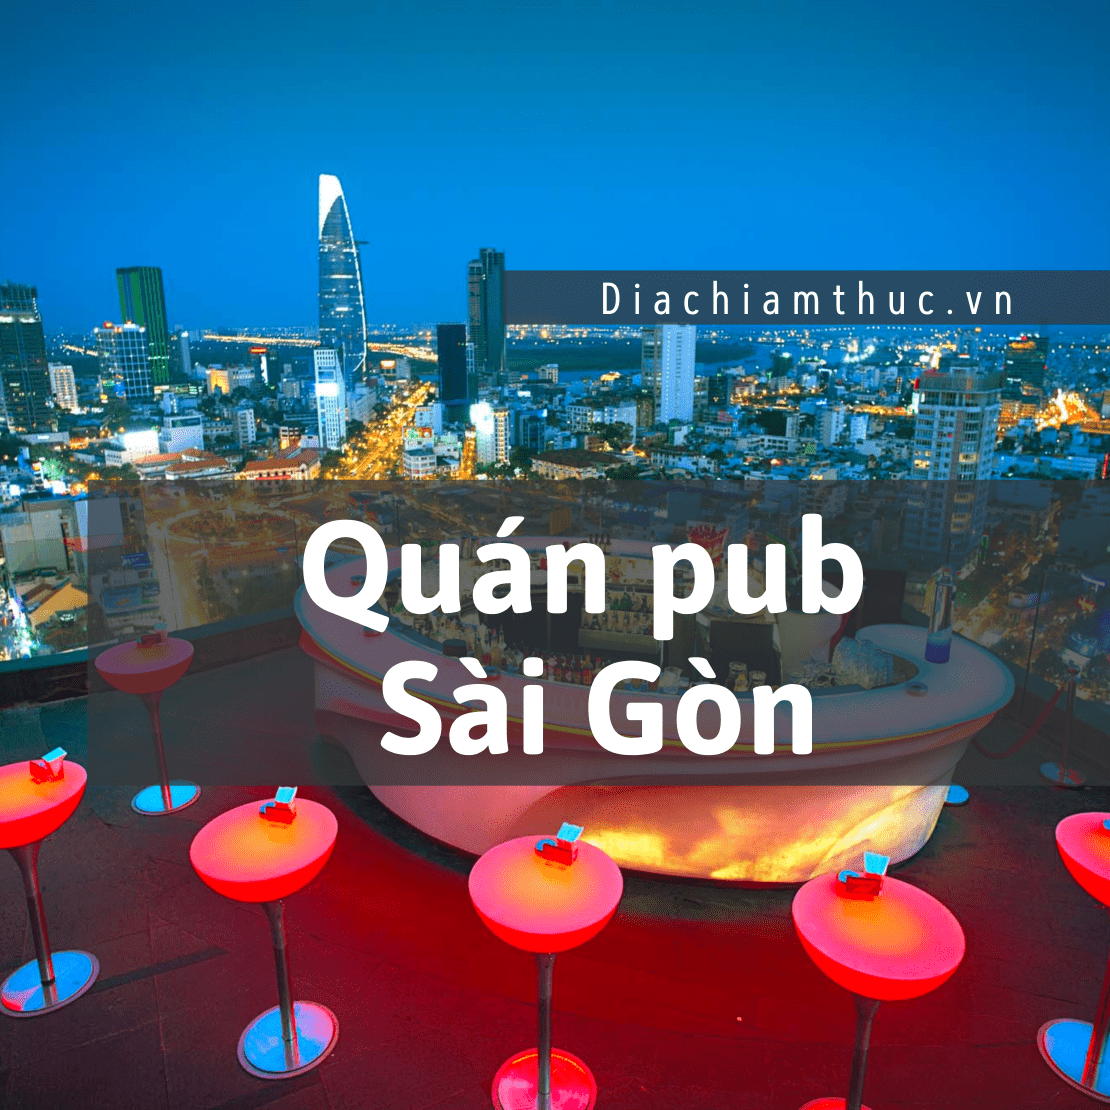 Quán pub Sài Gòn